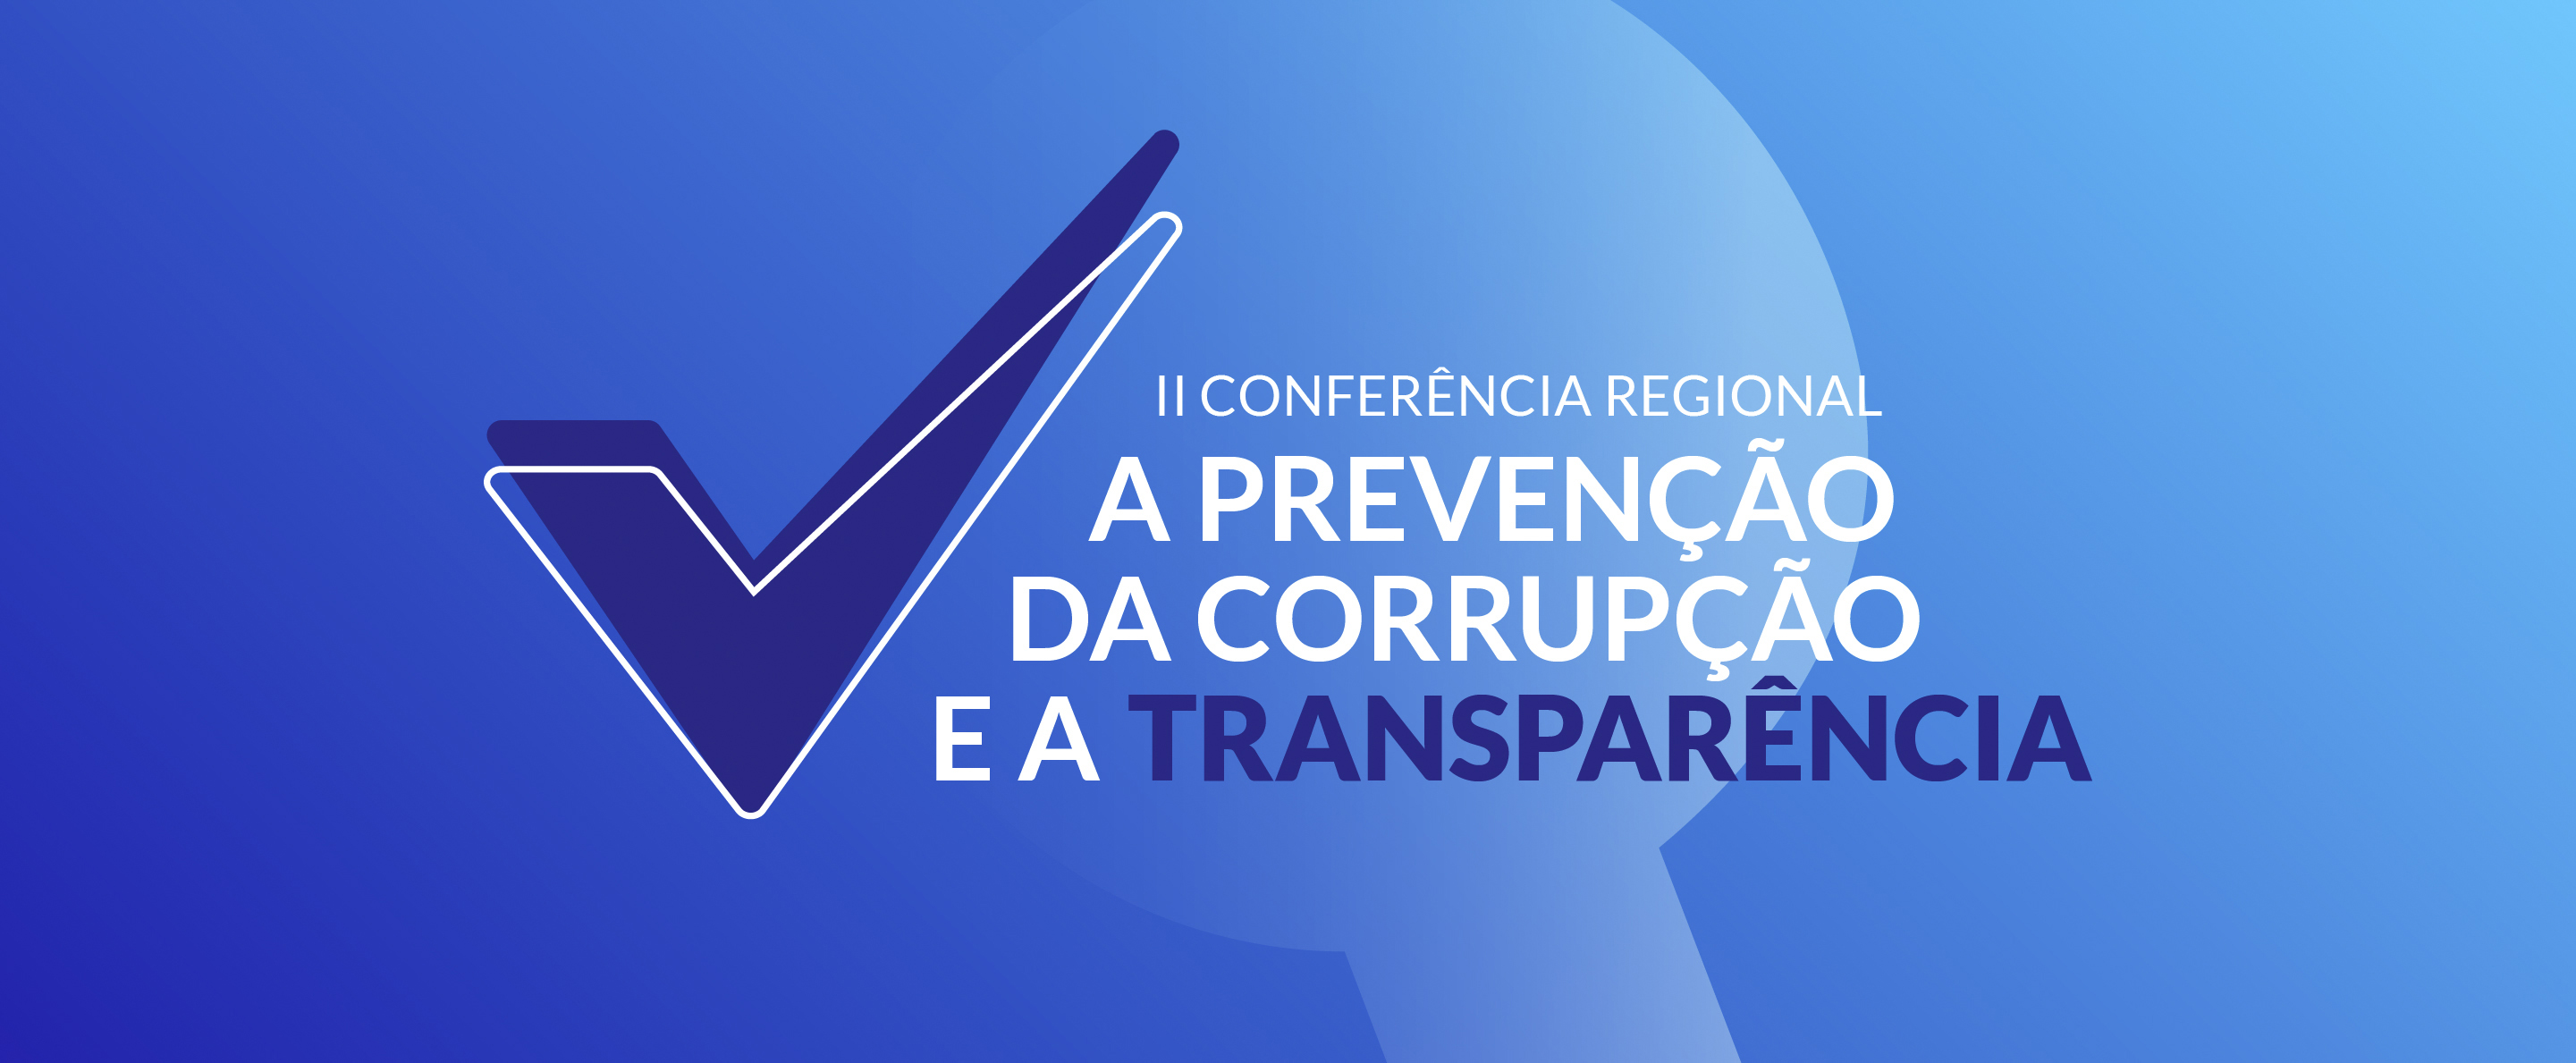 II Conferência Regional sobre a Prevenção da Corrupção e a Transparência - Cartaz